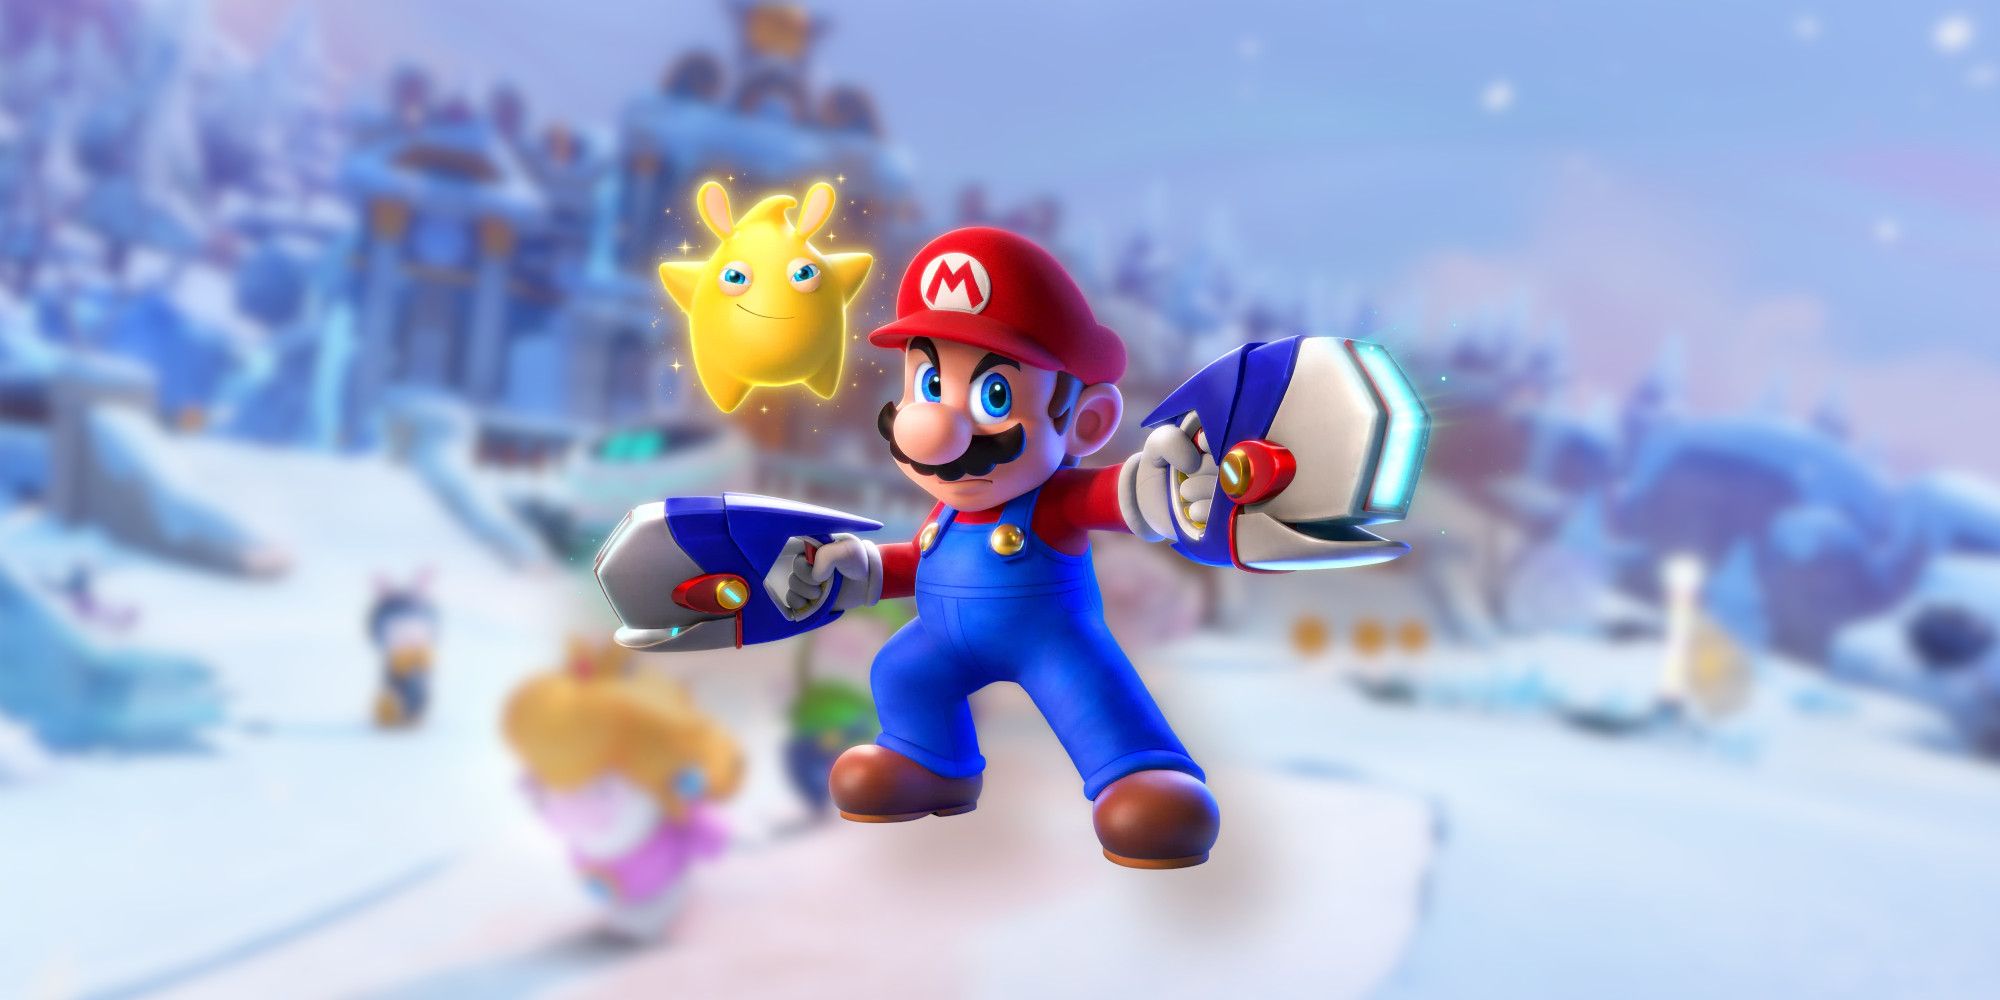 Mario in Mario Rabbids: Sparks of Hope